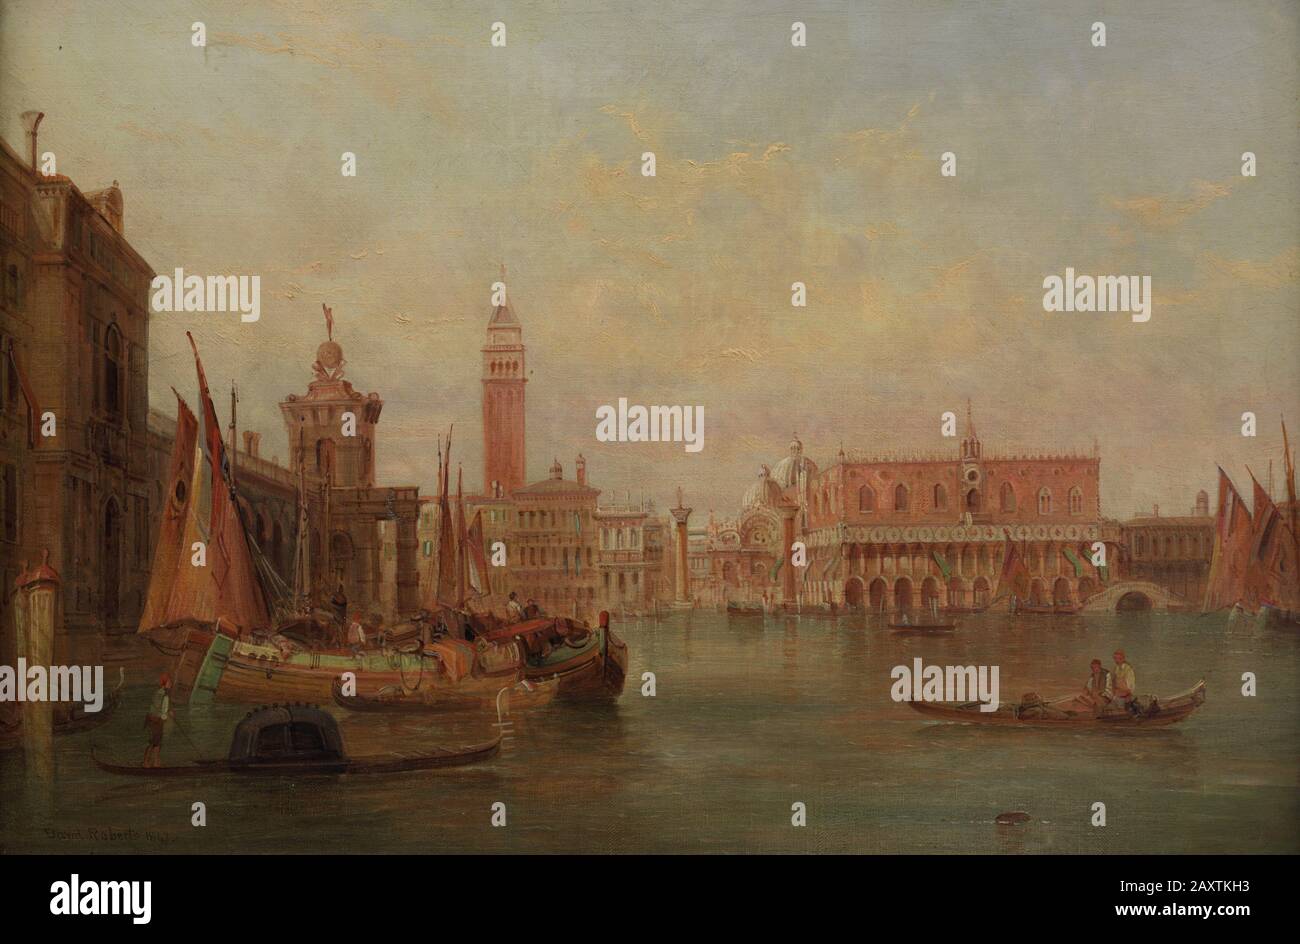 David Roberts (1796-1864). Englischer Romantischer Maler. Venedig. Der Canal Grande, Im Jahre 1848. Museum der Schönen Künste A Coruña, Galicien, Spanien. Stockfoto